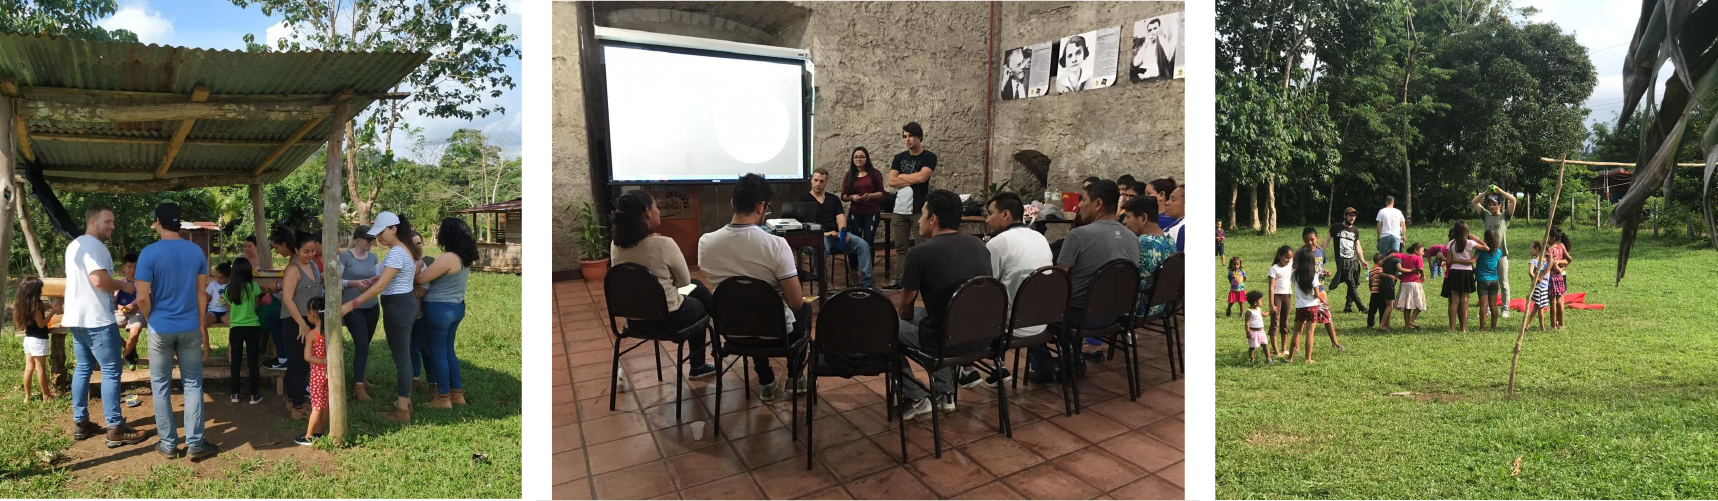 El TC-723 busca promover los derechos humanos de las personas migrantes, solicitantes de asilo y refugiadas en Costa Rica, por medio de procesos de sensibilización, información y acompañamiento a la población migrante, organizaciones, e instituciones vinculadas. 